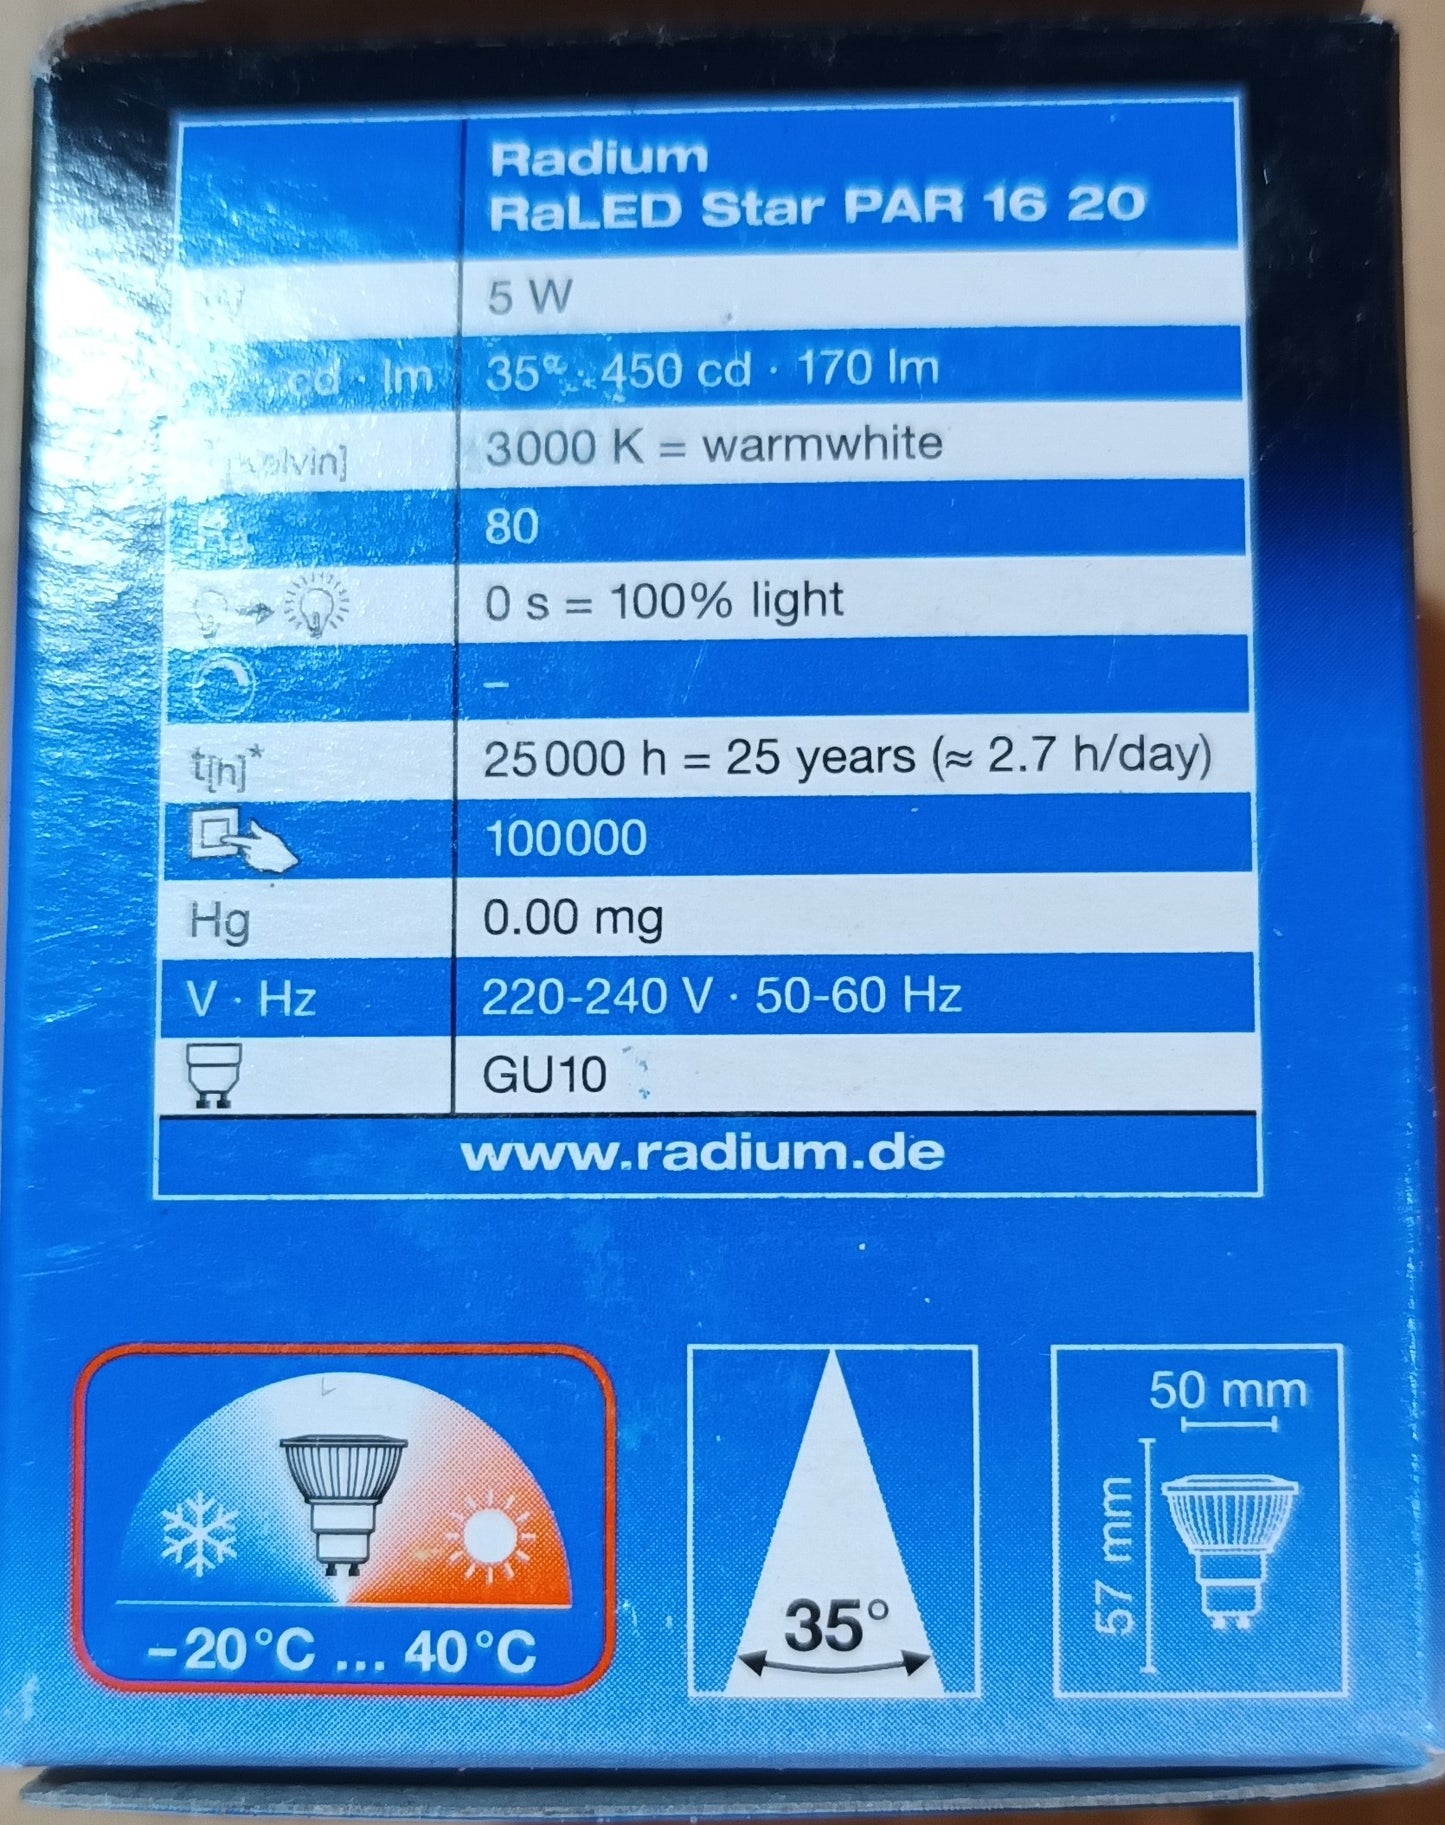 Radium LED Gu10 5 watt long life 25,000h